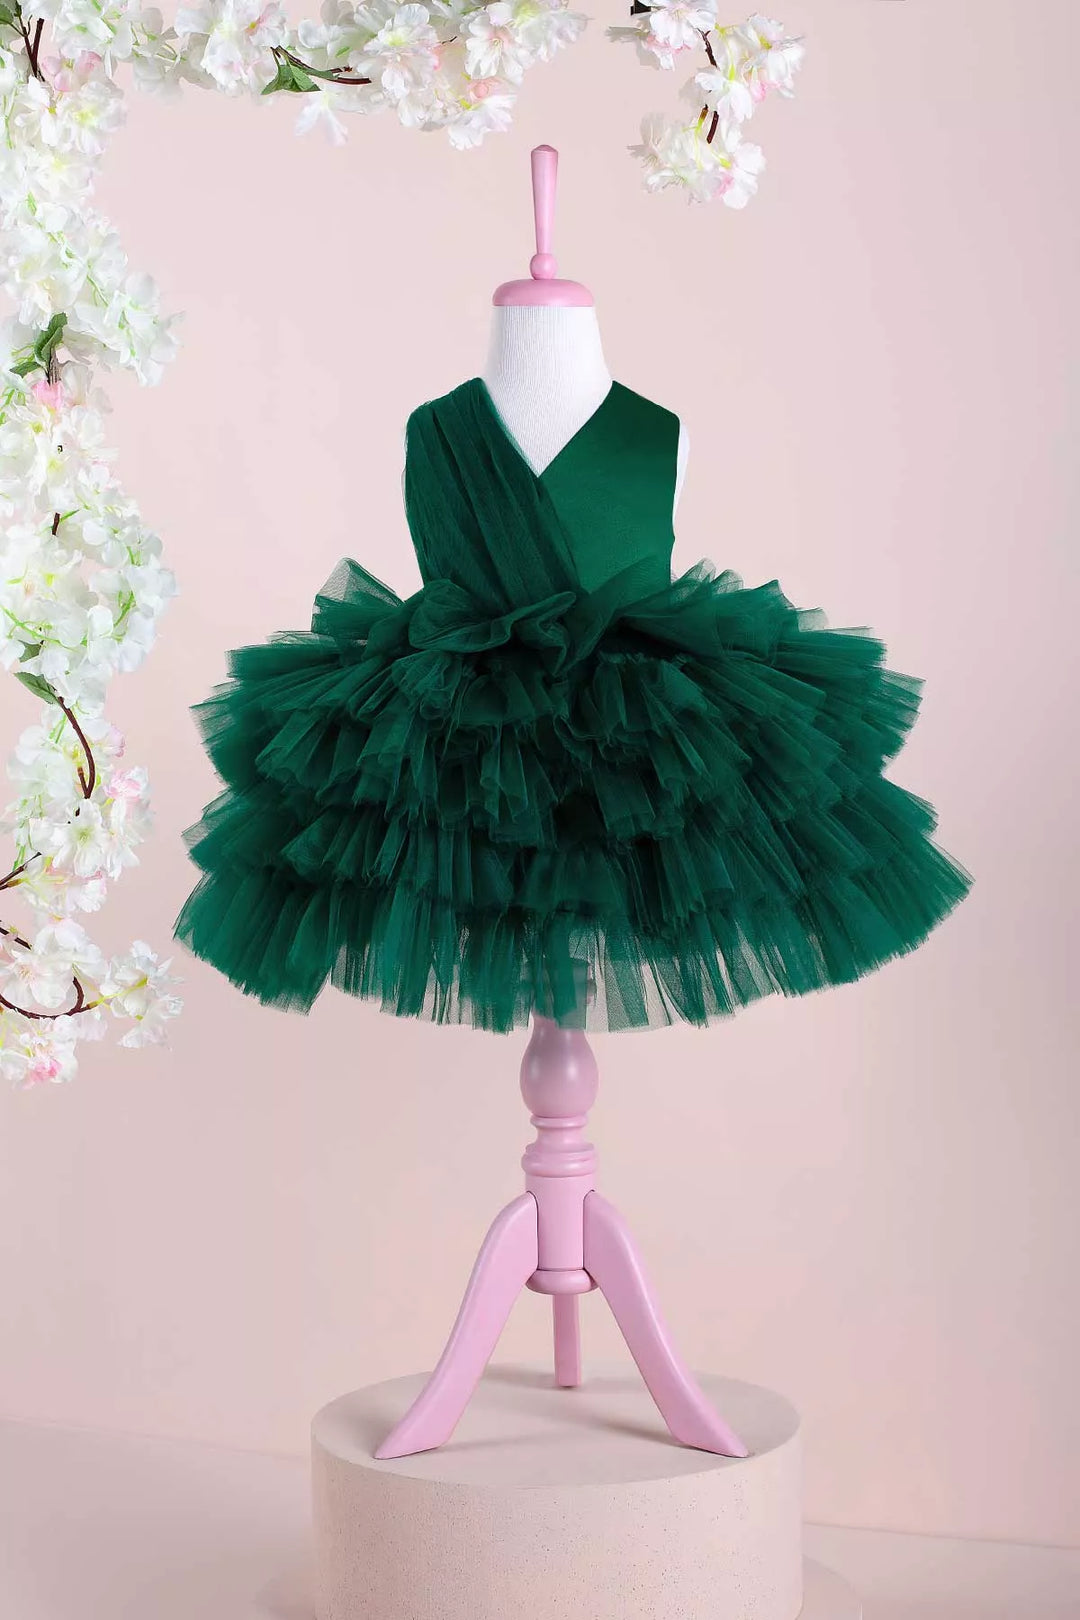 Green fluffy dress